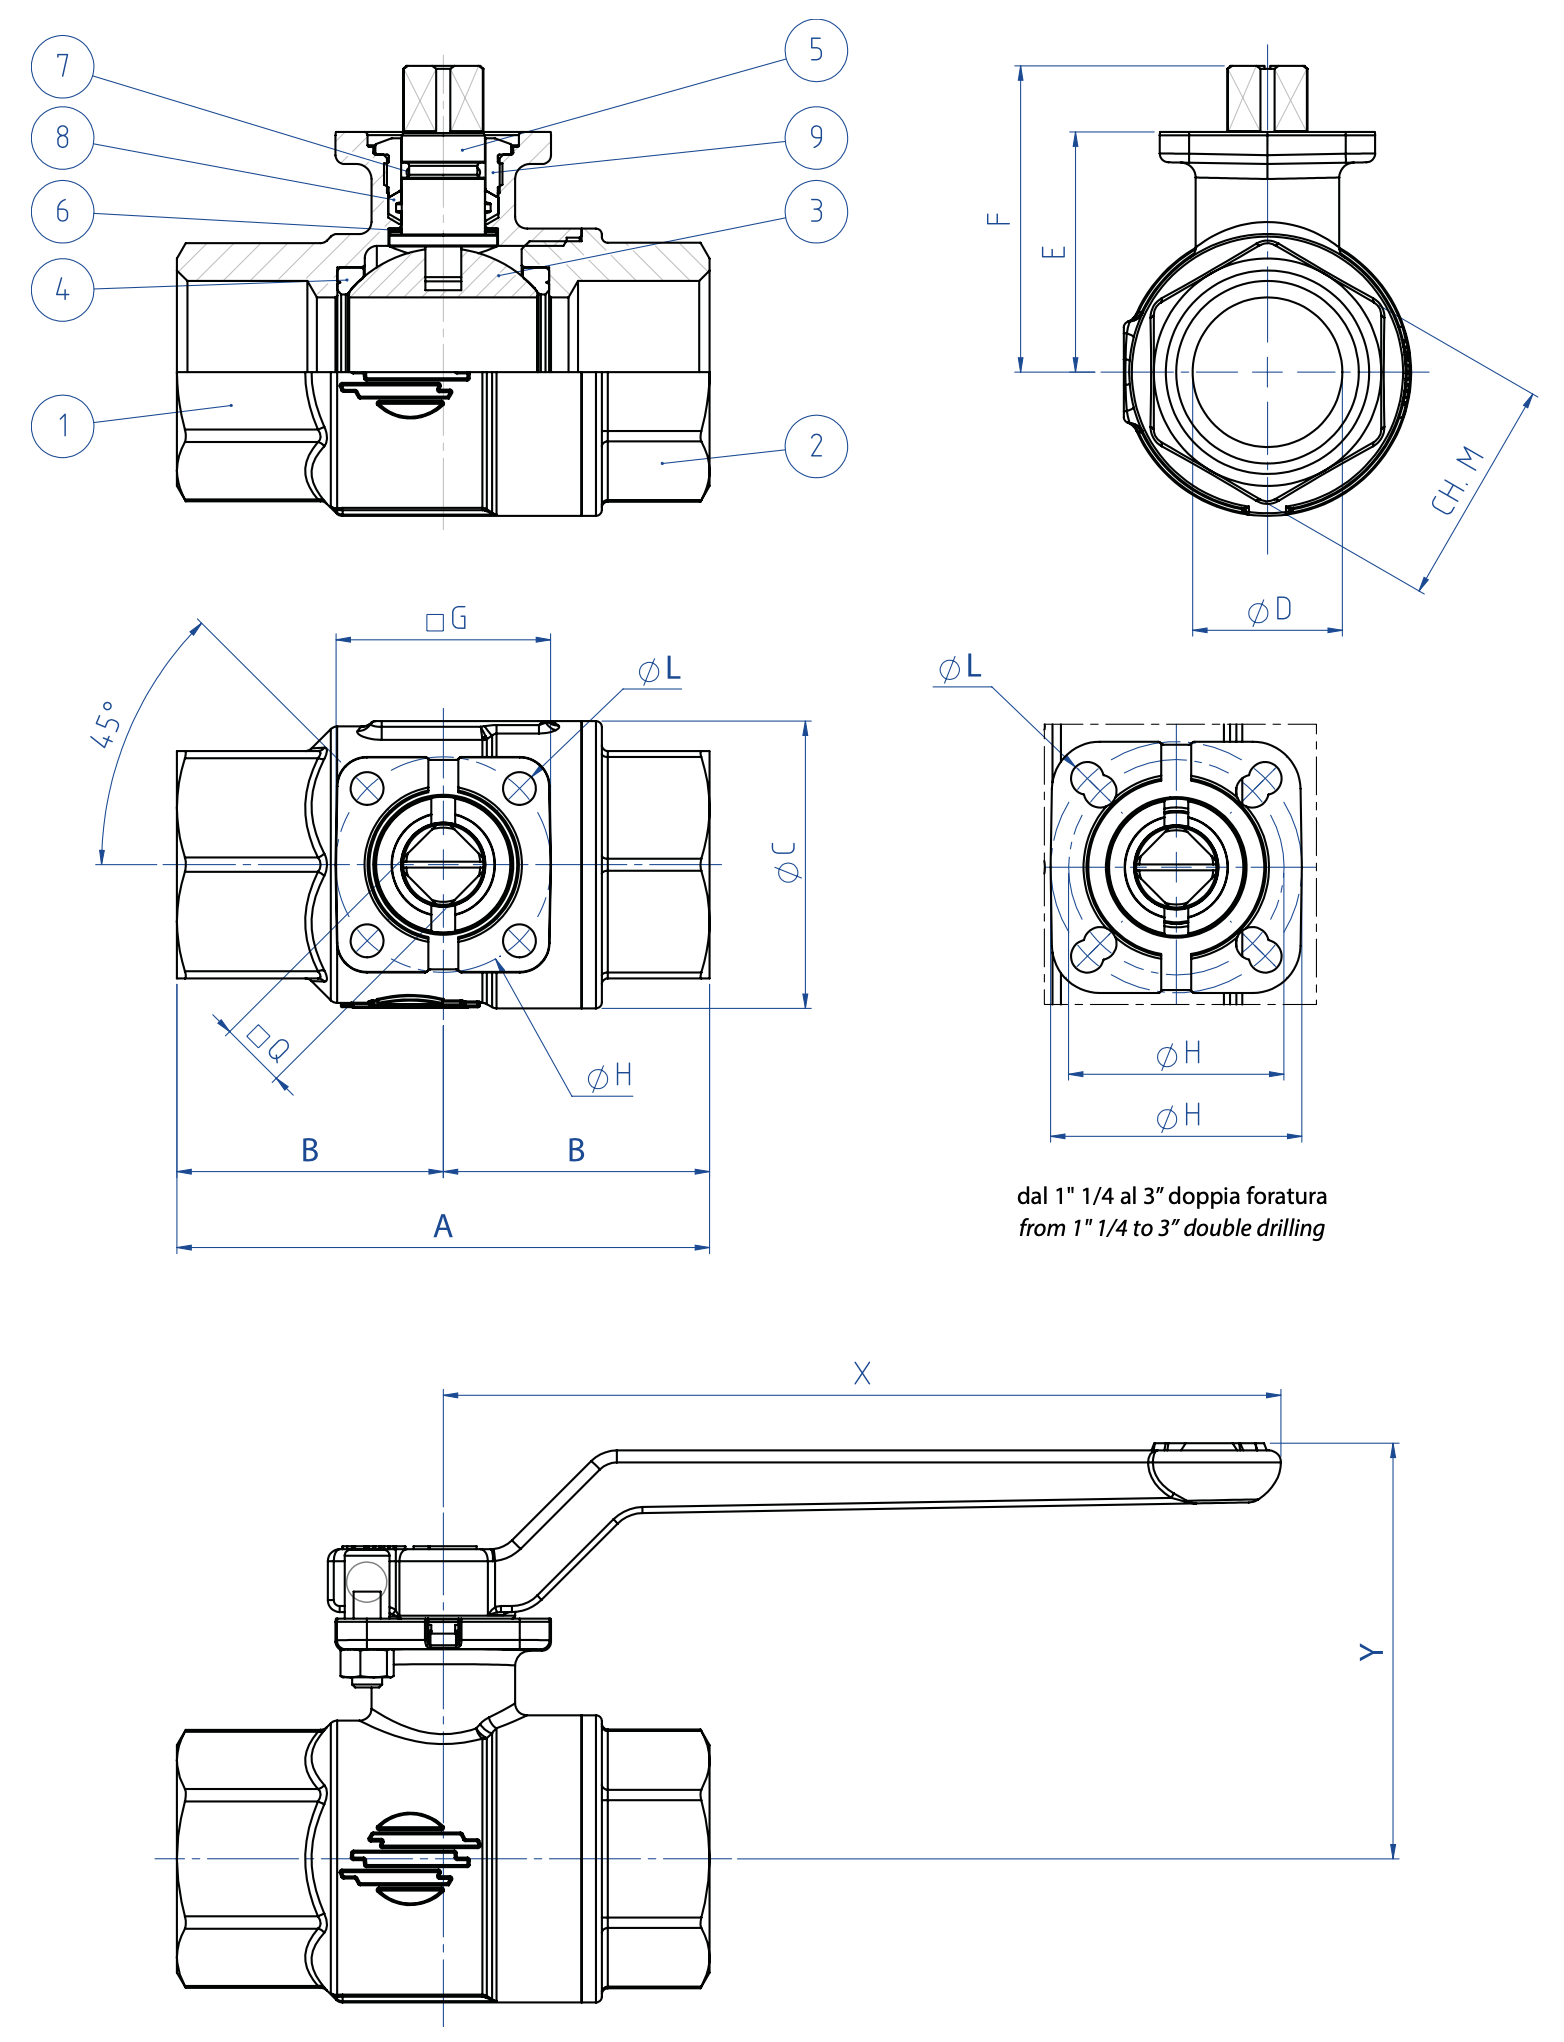 Item 101 brass ball valve - materials - 